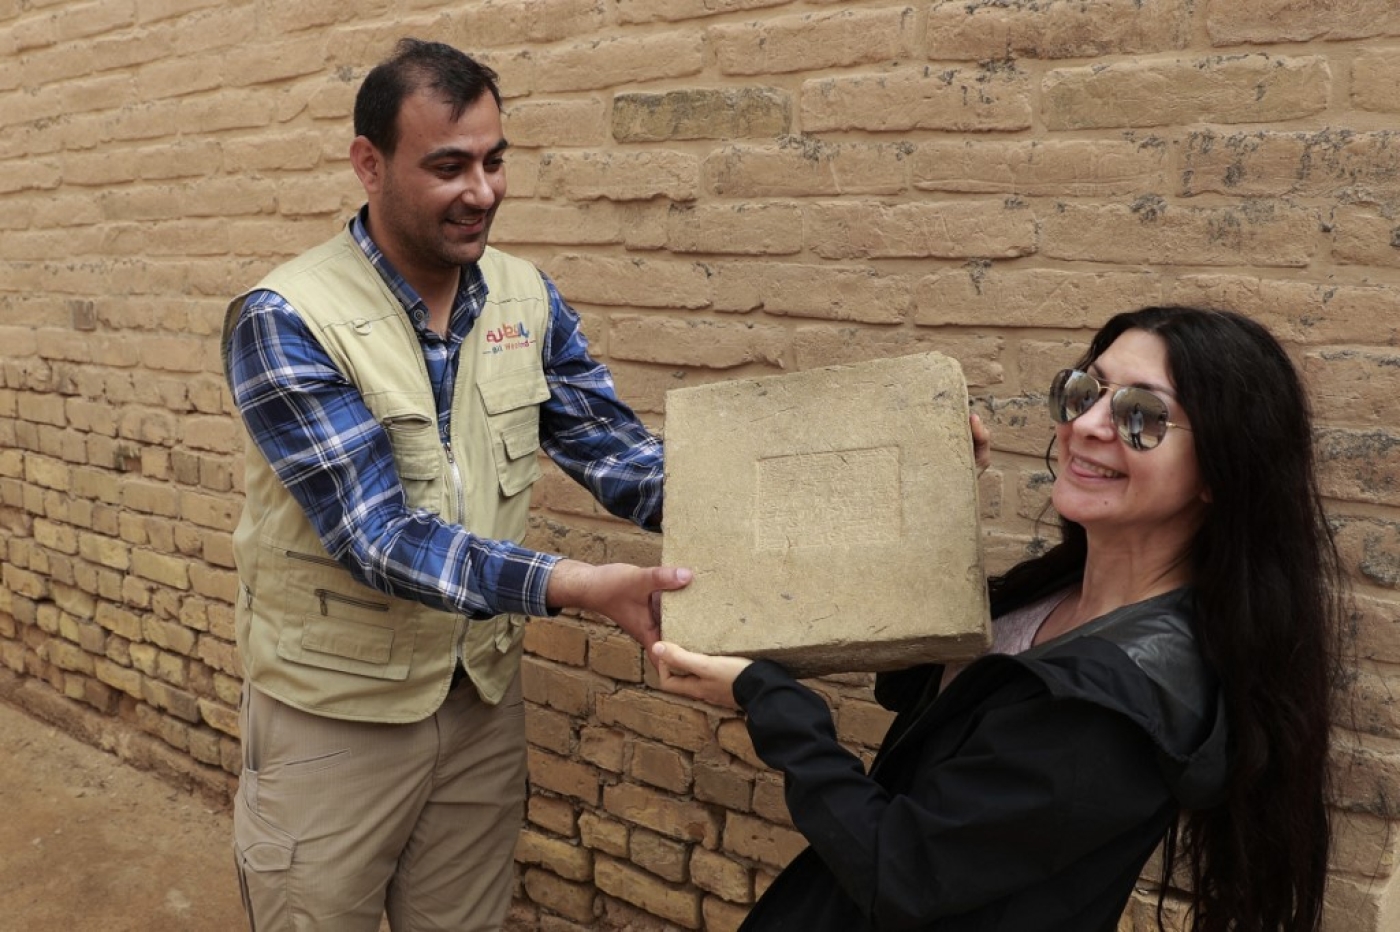 Une touriste étrangère visite l’ancienne ville de Babylone, à 100 km au sud de Bagdad, le 7 mars 2022 (AFP/Ahmad al-Rubaye)